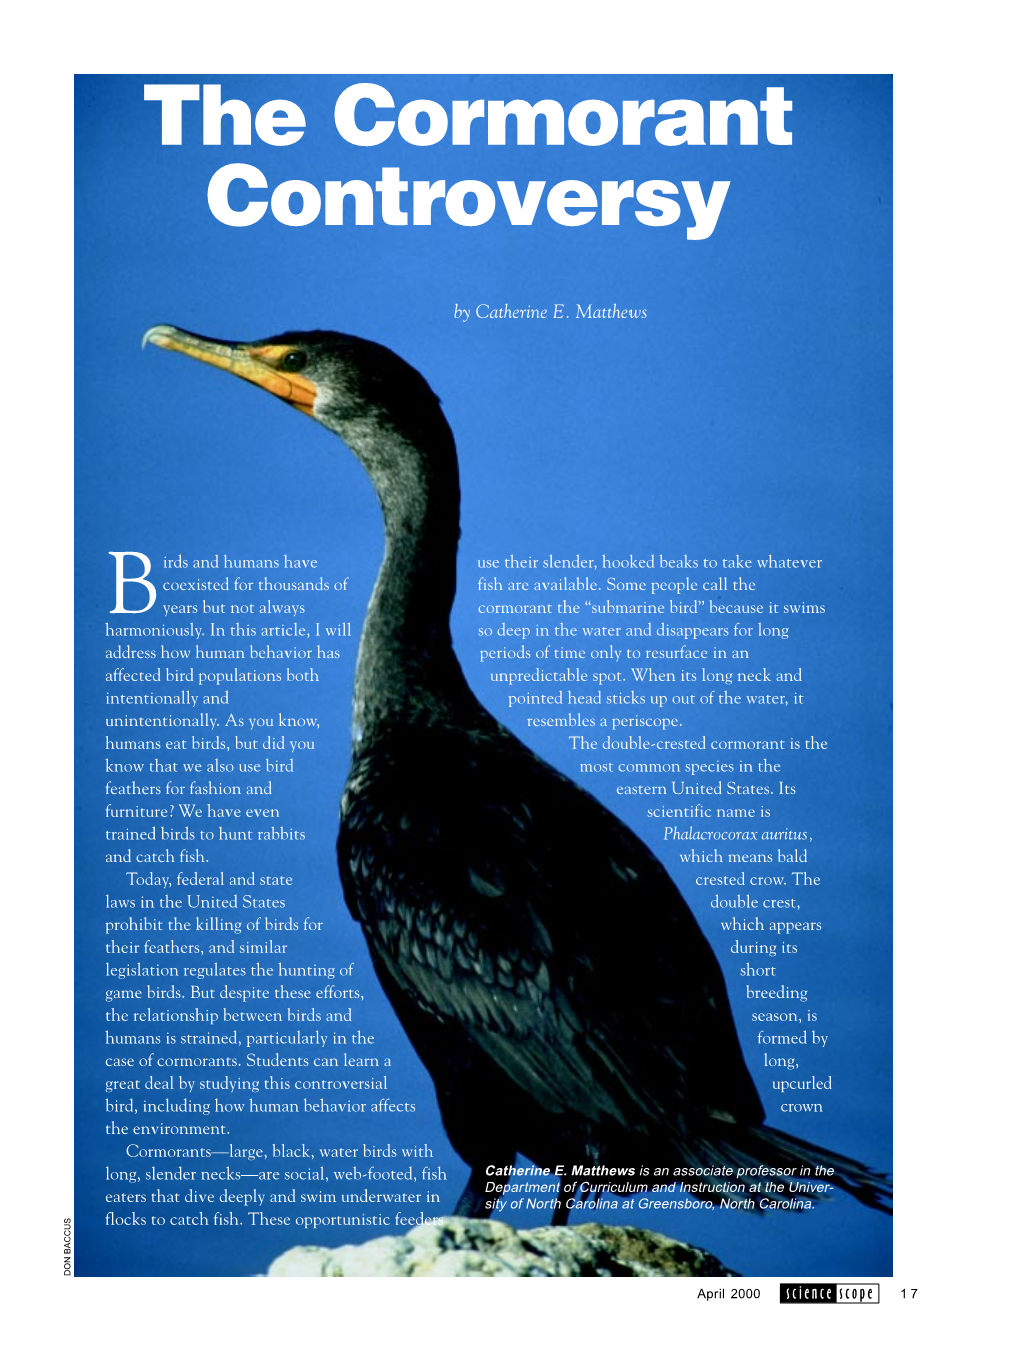 The Cormorant Controversy